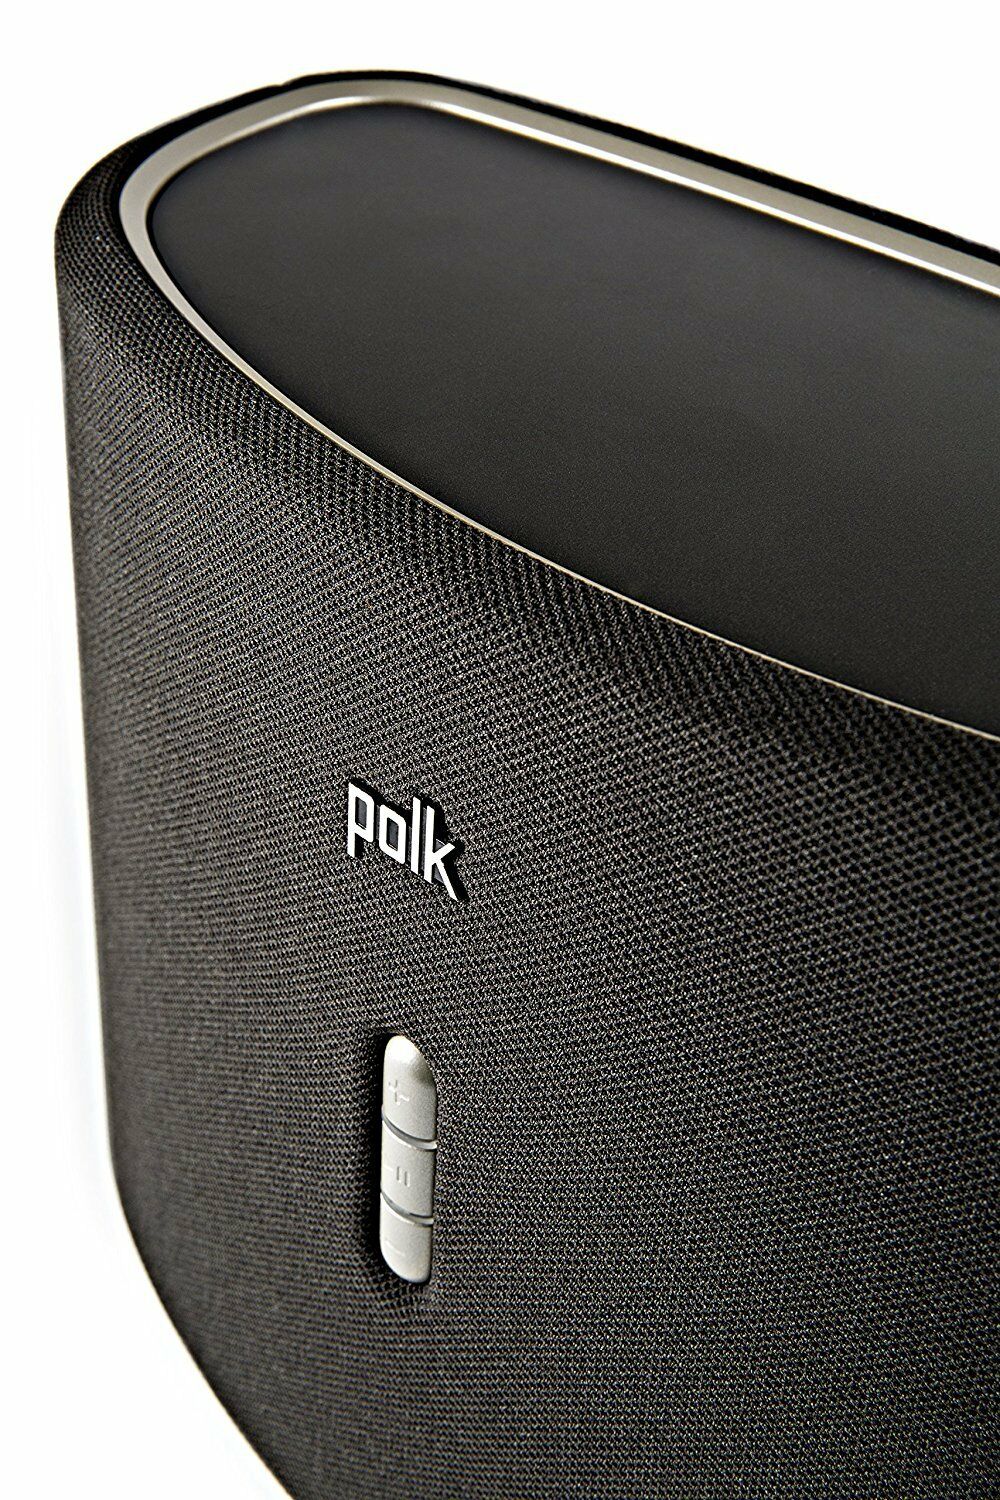 Polk Audio Omni S6 Wireless WiFi Speaker in Black